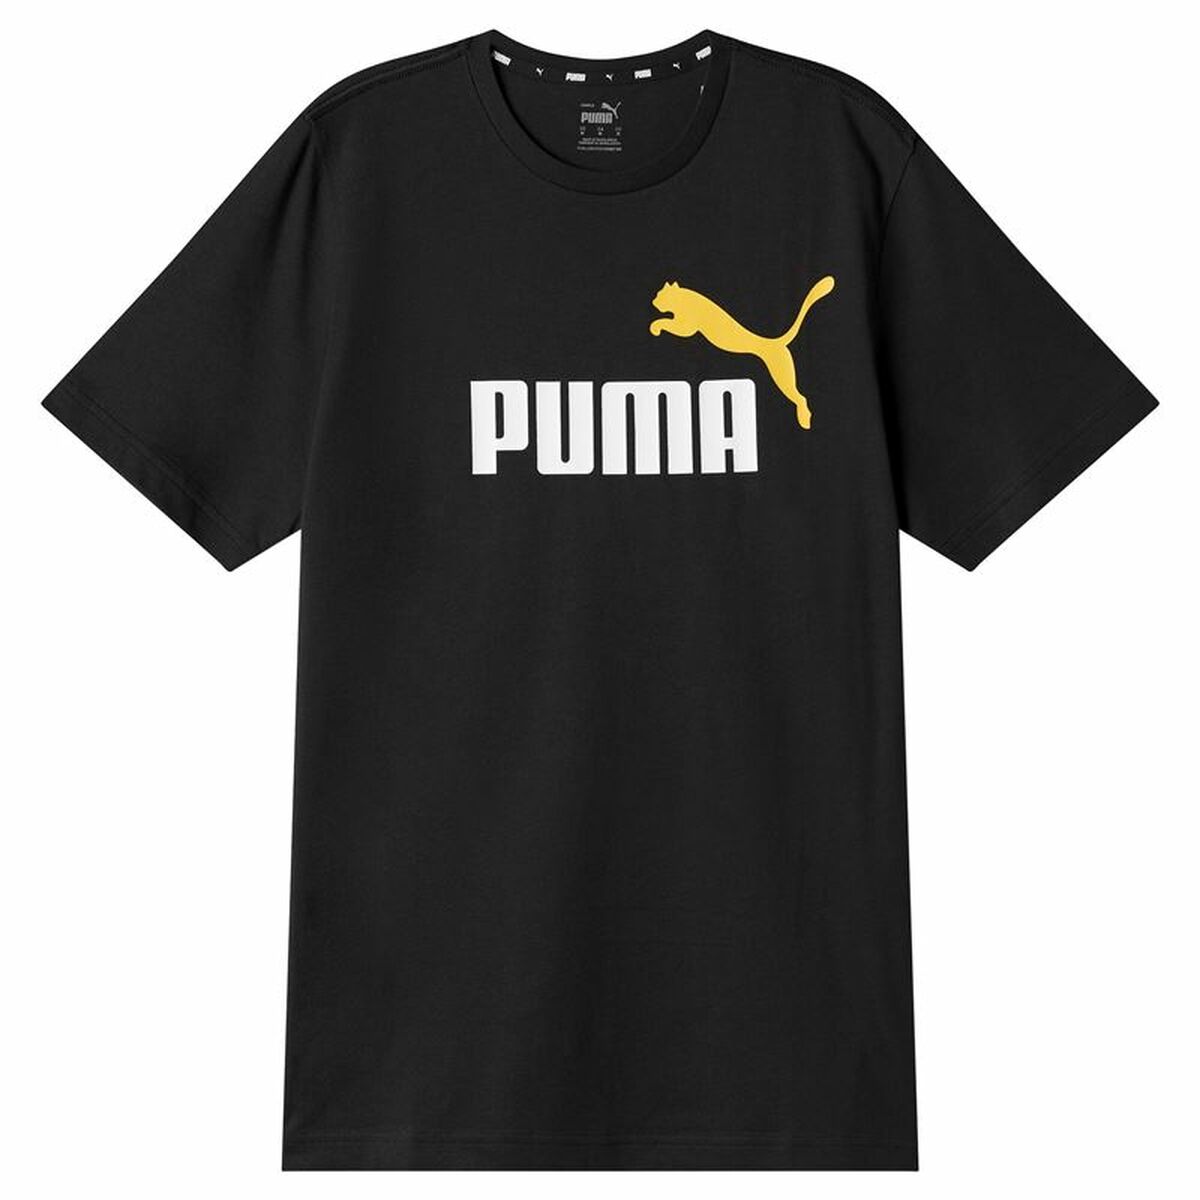 Osta tuote Miesten T-paita Puma Ess+ 2 Col Logo Musta (Koko: L) verkkokaupastamme Korhone: Urheilu & Vapaa-aika 20% alennuksella koodilla VIIKONLOPPU